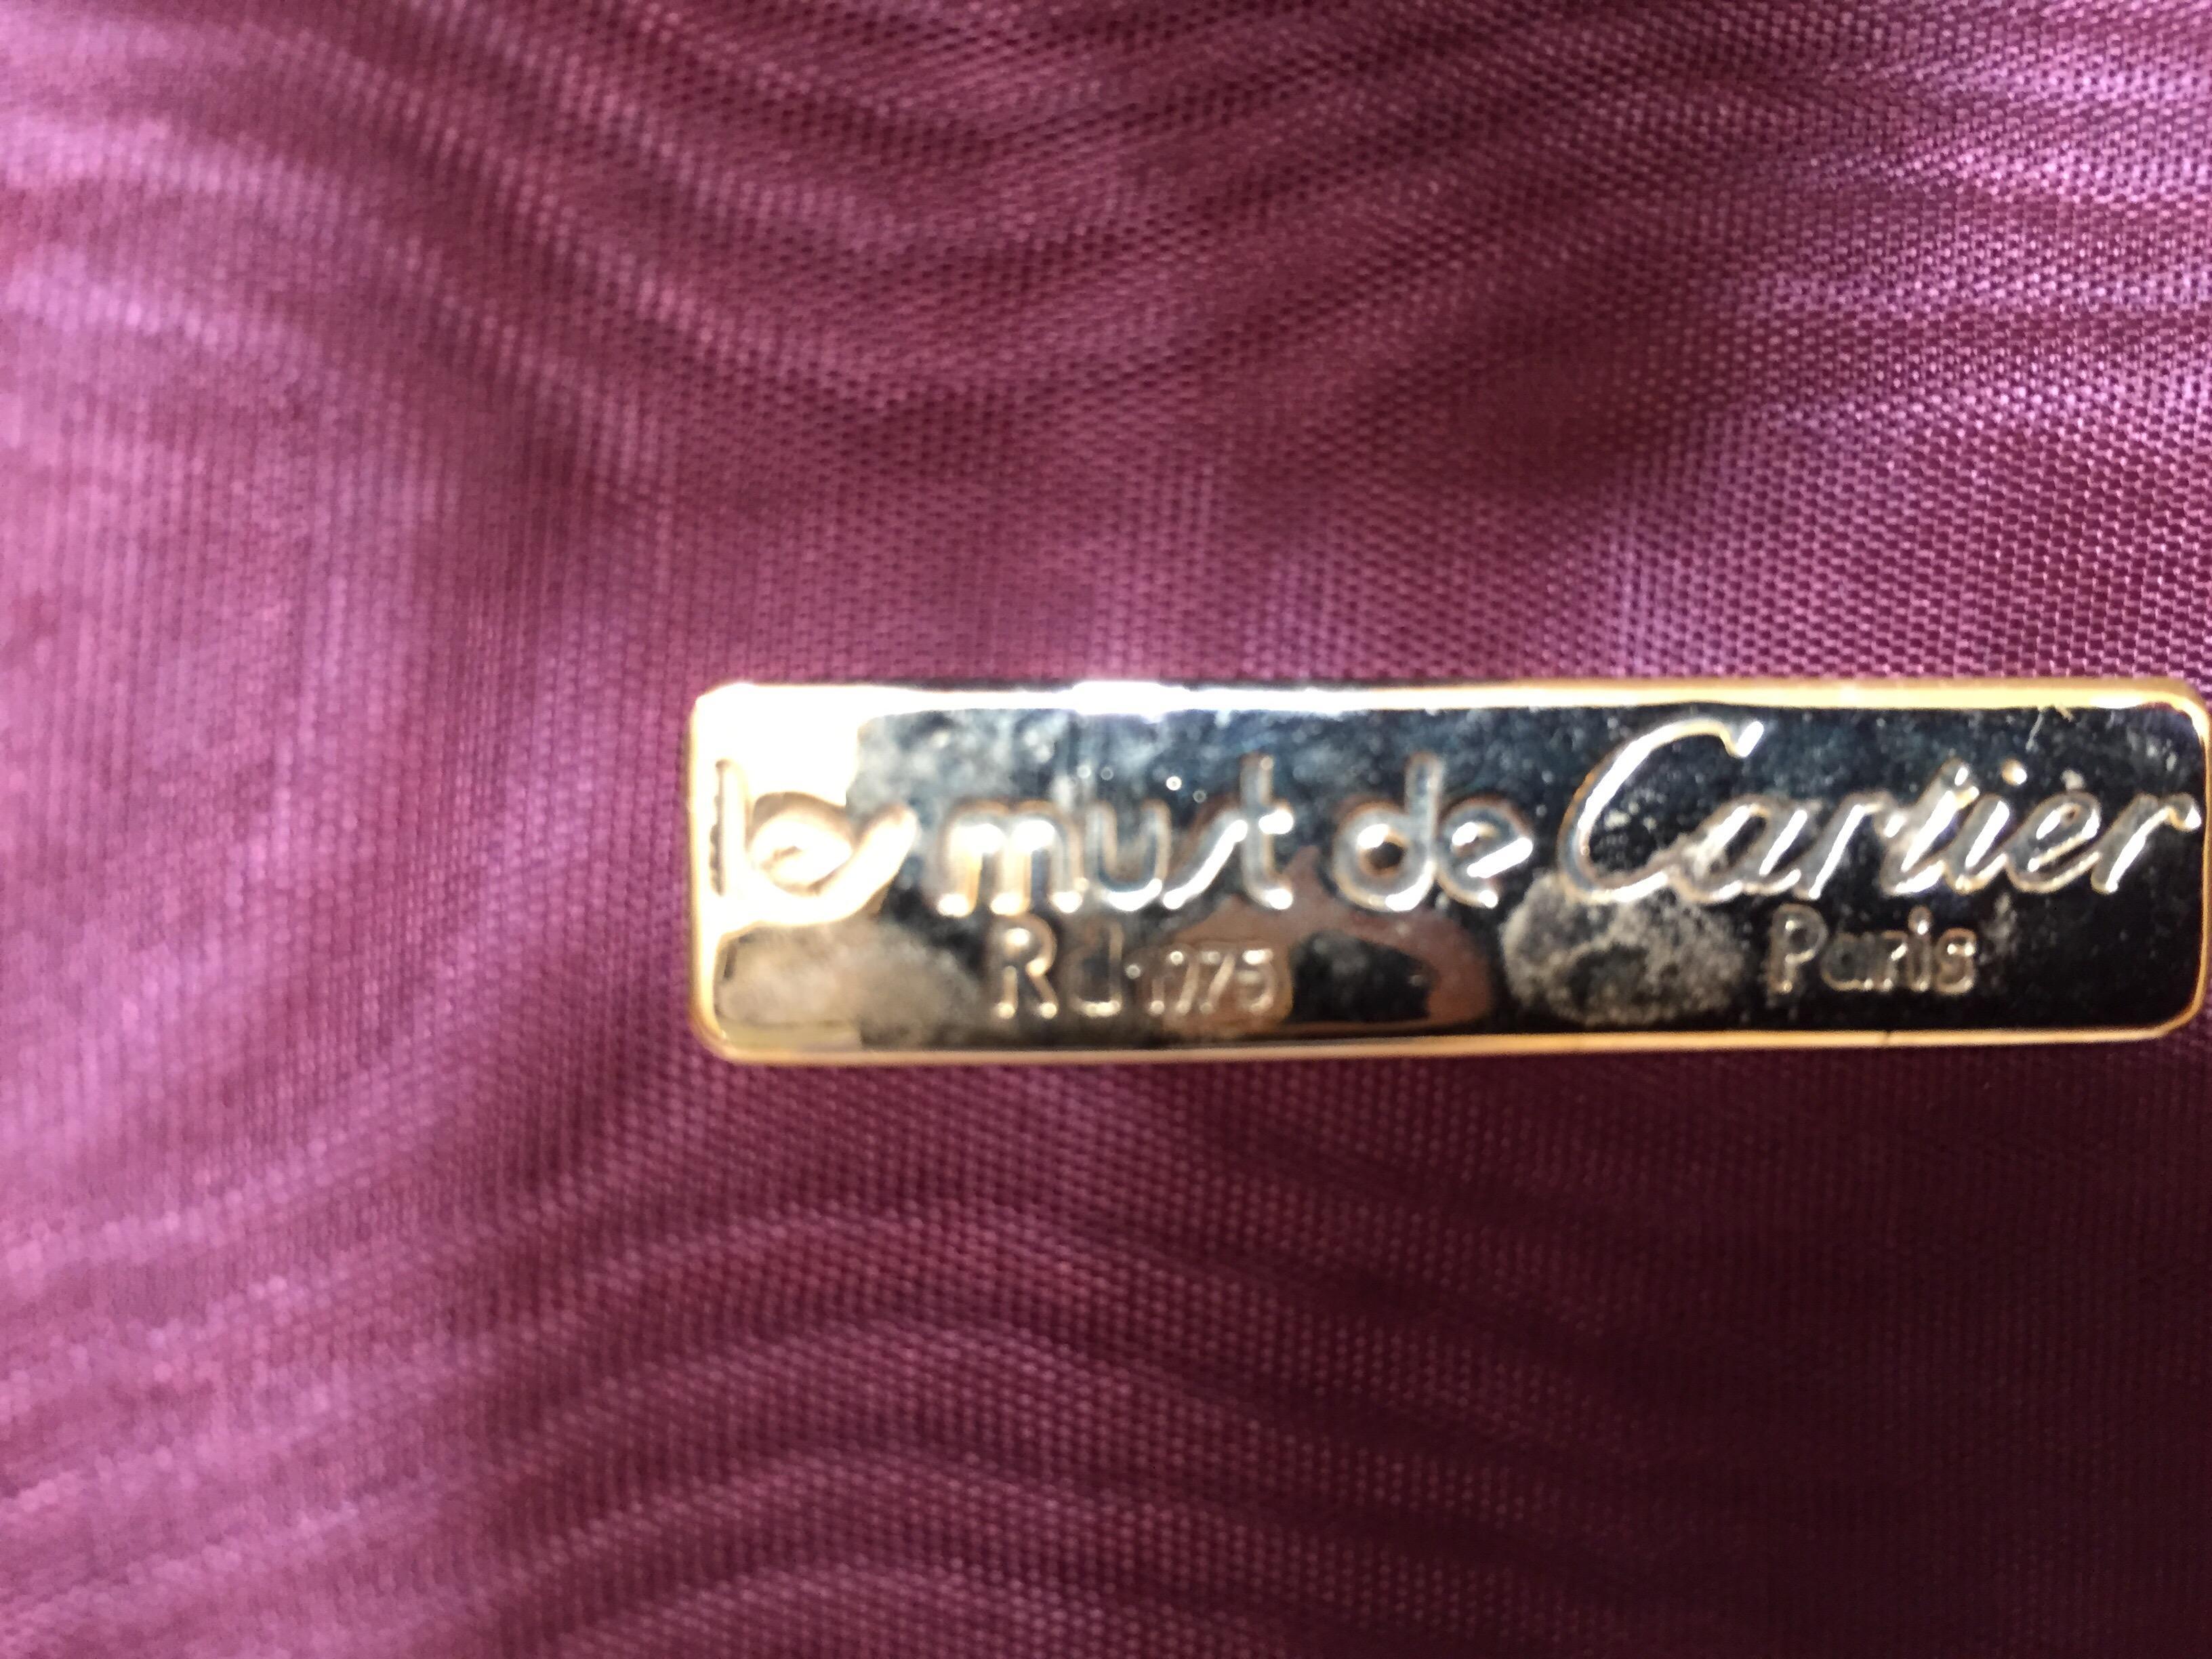 Les Must de Cartier Vintage Leather Suitcase Burgundy Bordeaux Luggage For Sale 3